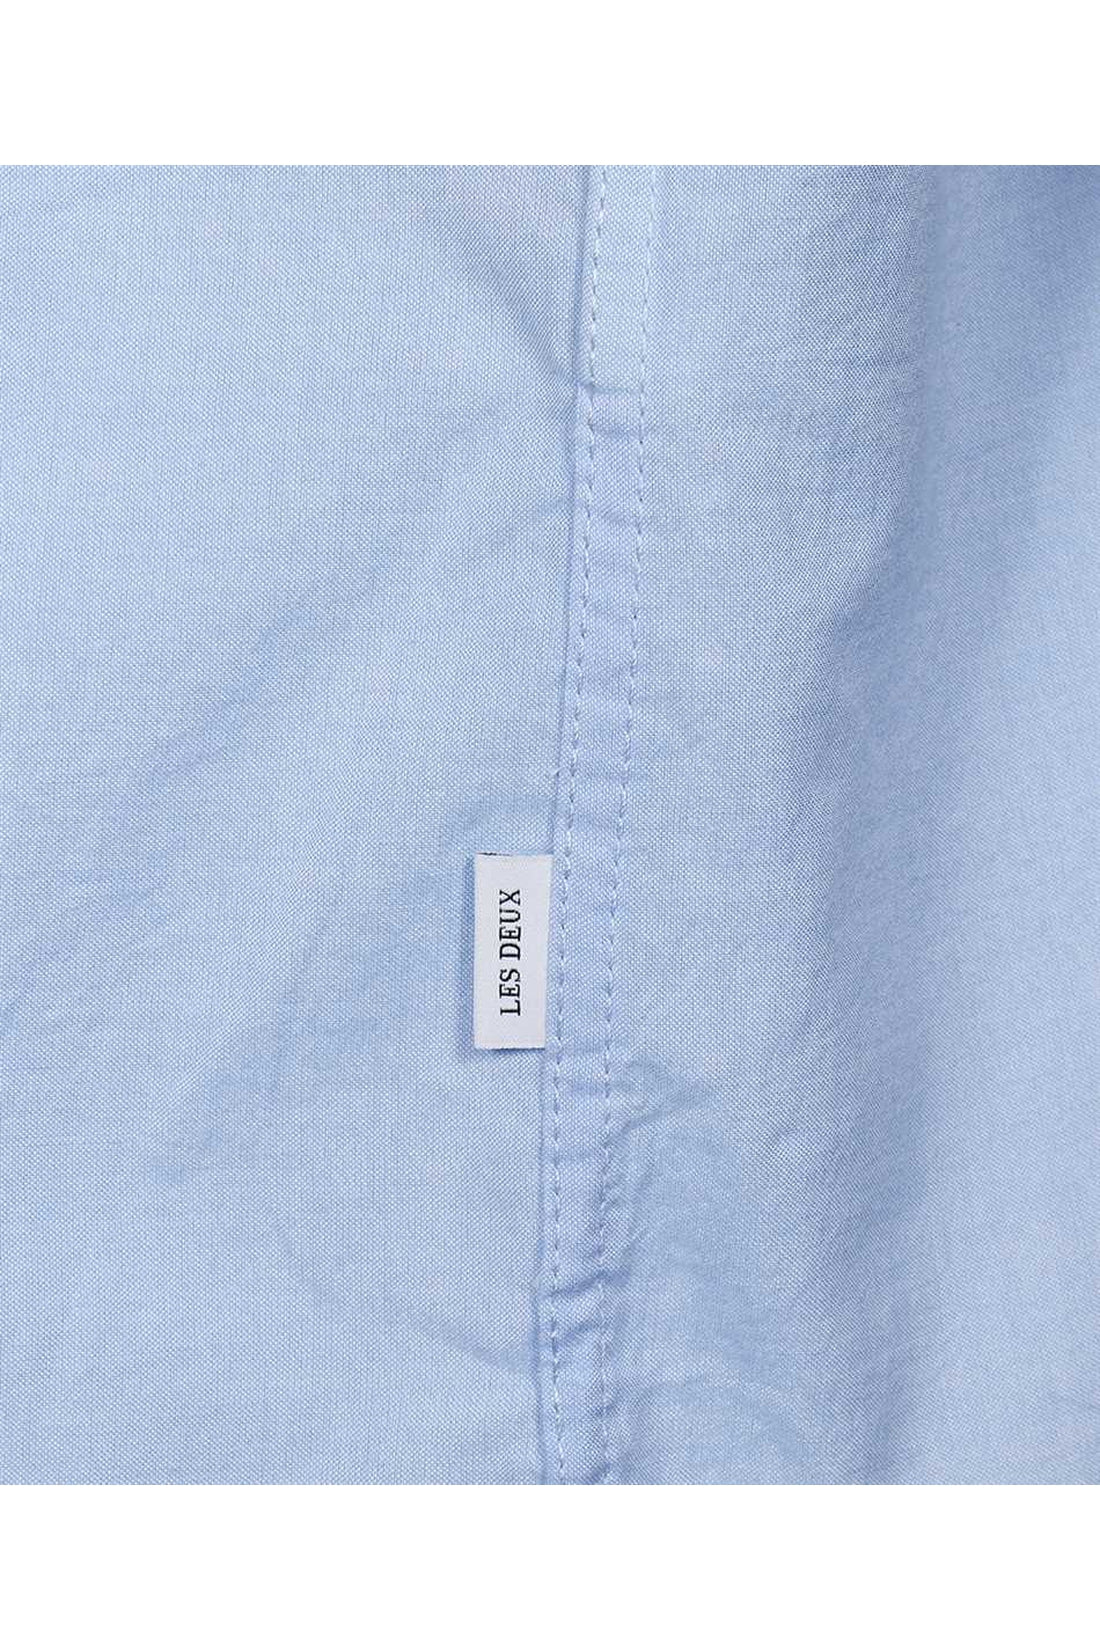 Les Deux-OUTLET-SALE-Shirt in cotton-ARCHIVIST